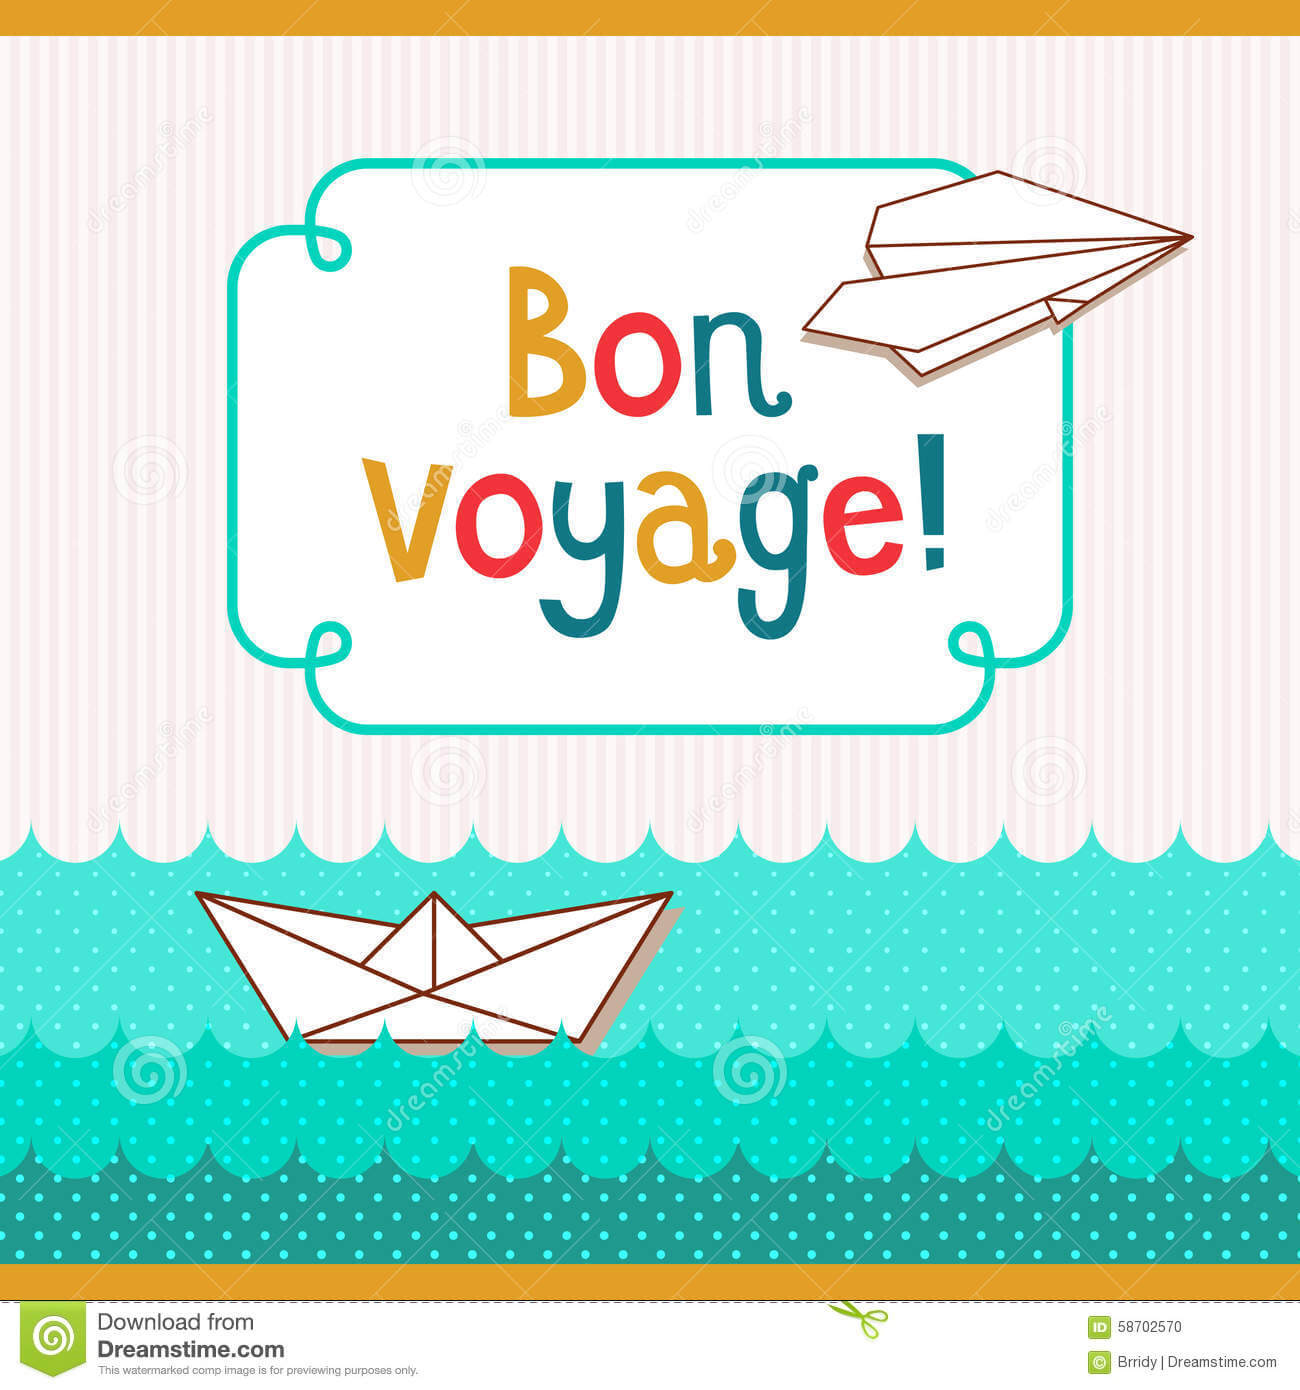 Bon Voyage Card Template ] – Bon Voyage Postcards Zazzle Com Pertaining To Bon Voyage Card Template